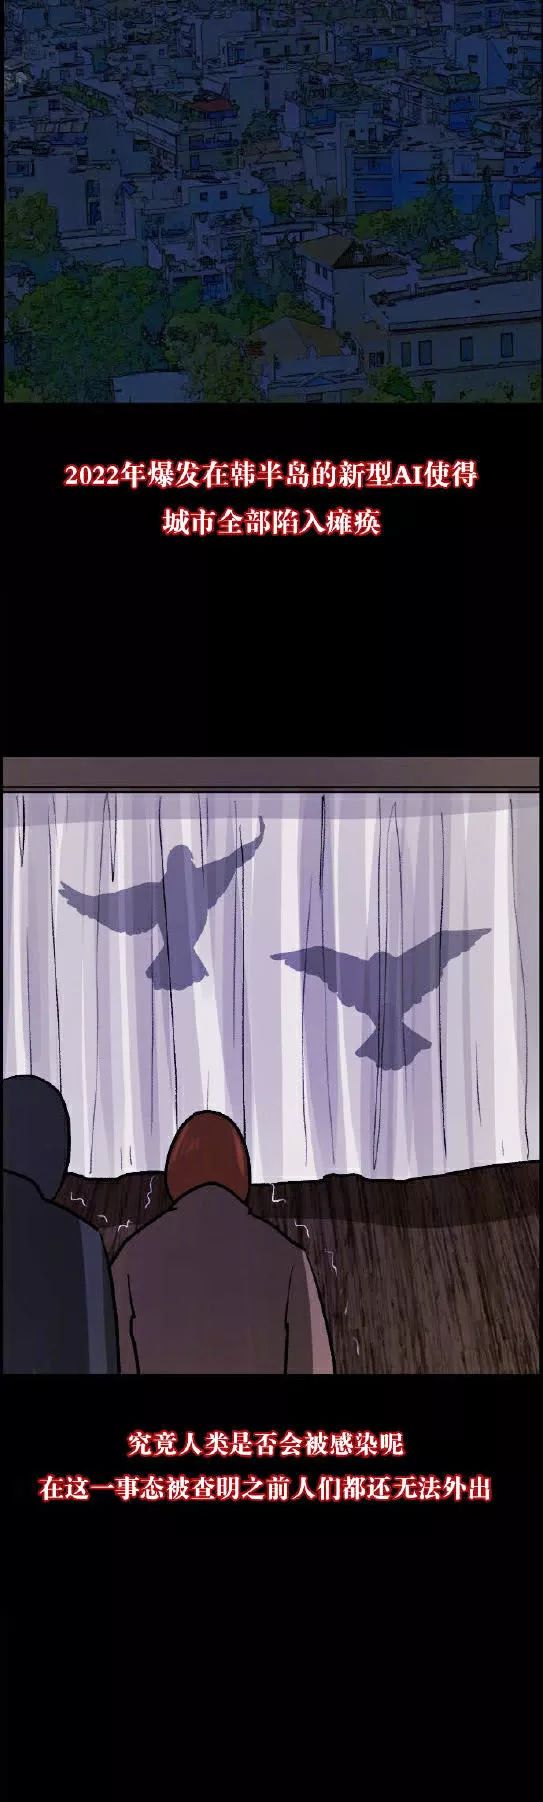 驚悚漫畫《鴿子病毒》致命的鴿子病毒 靈異 第32張